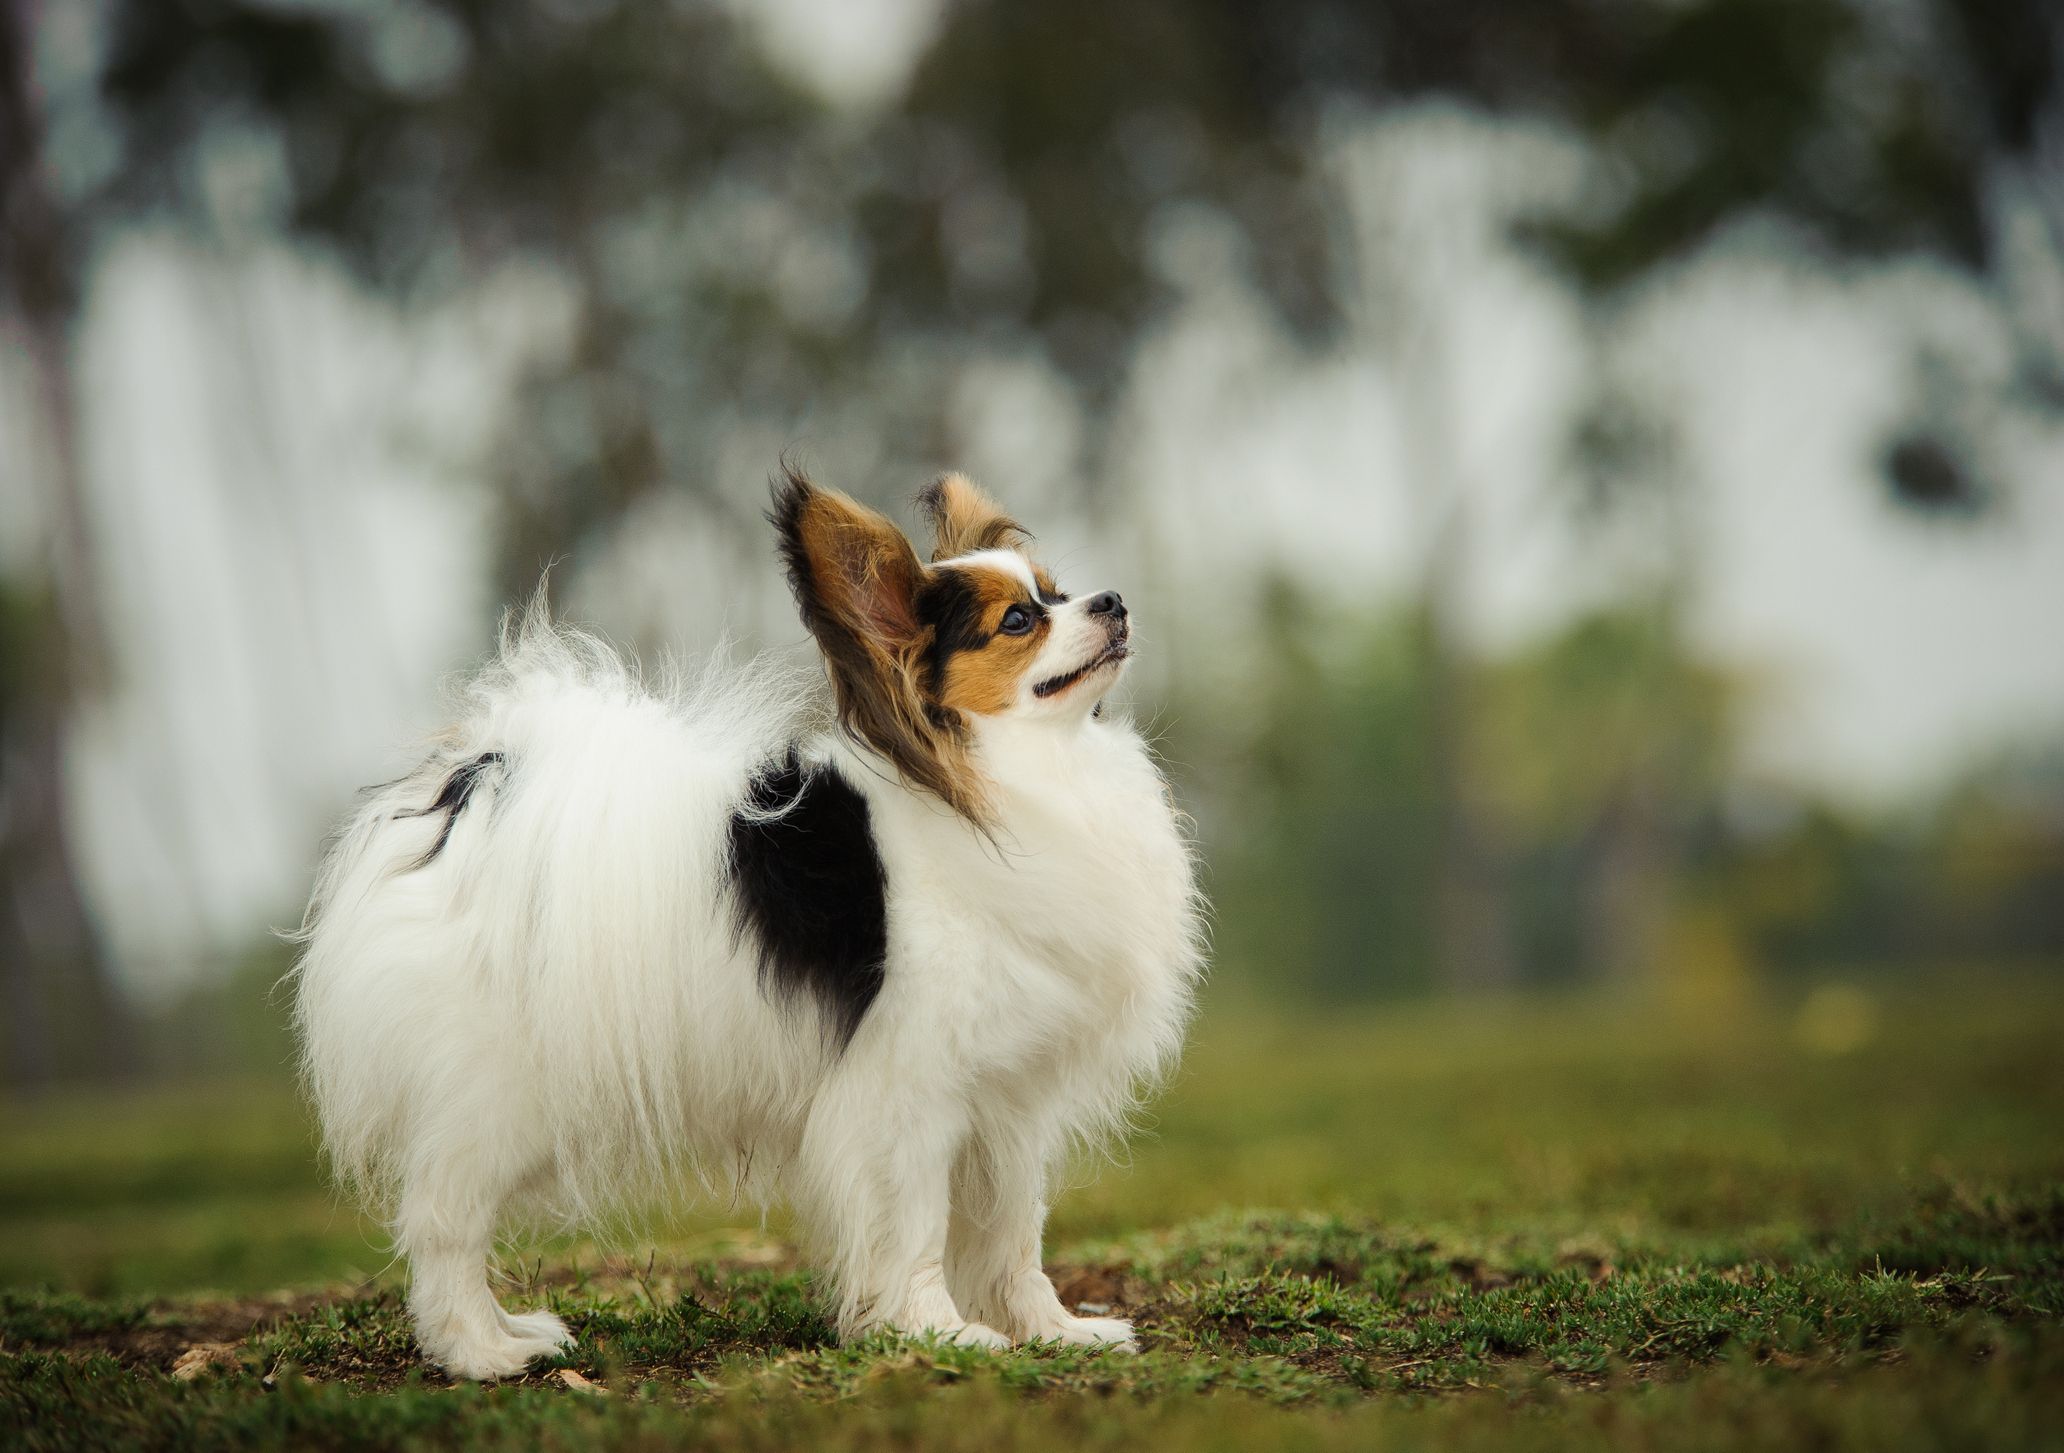 Best Rat Dog Ideas On Pinterest Doge Dog Breed Corgi Dog 4